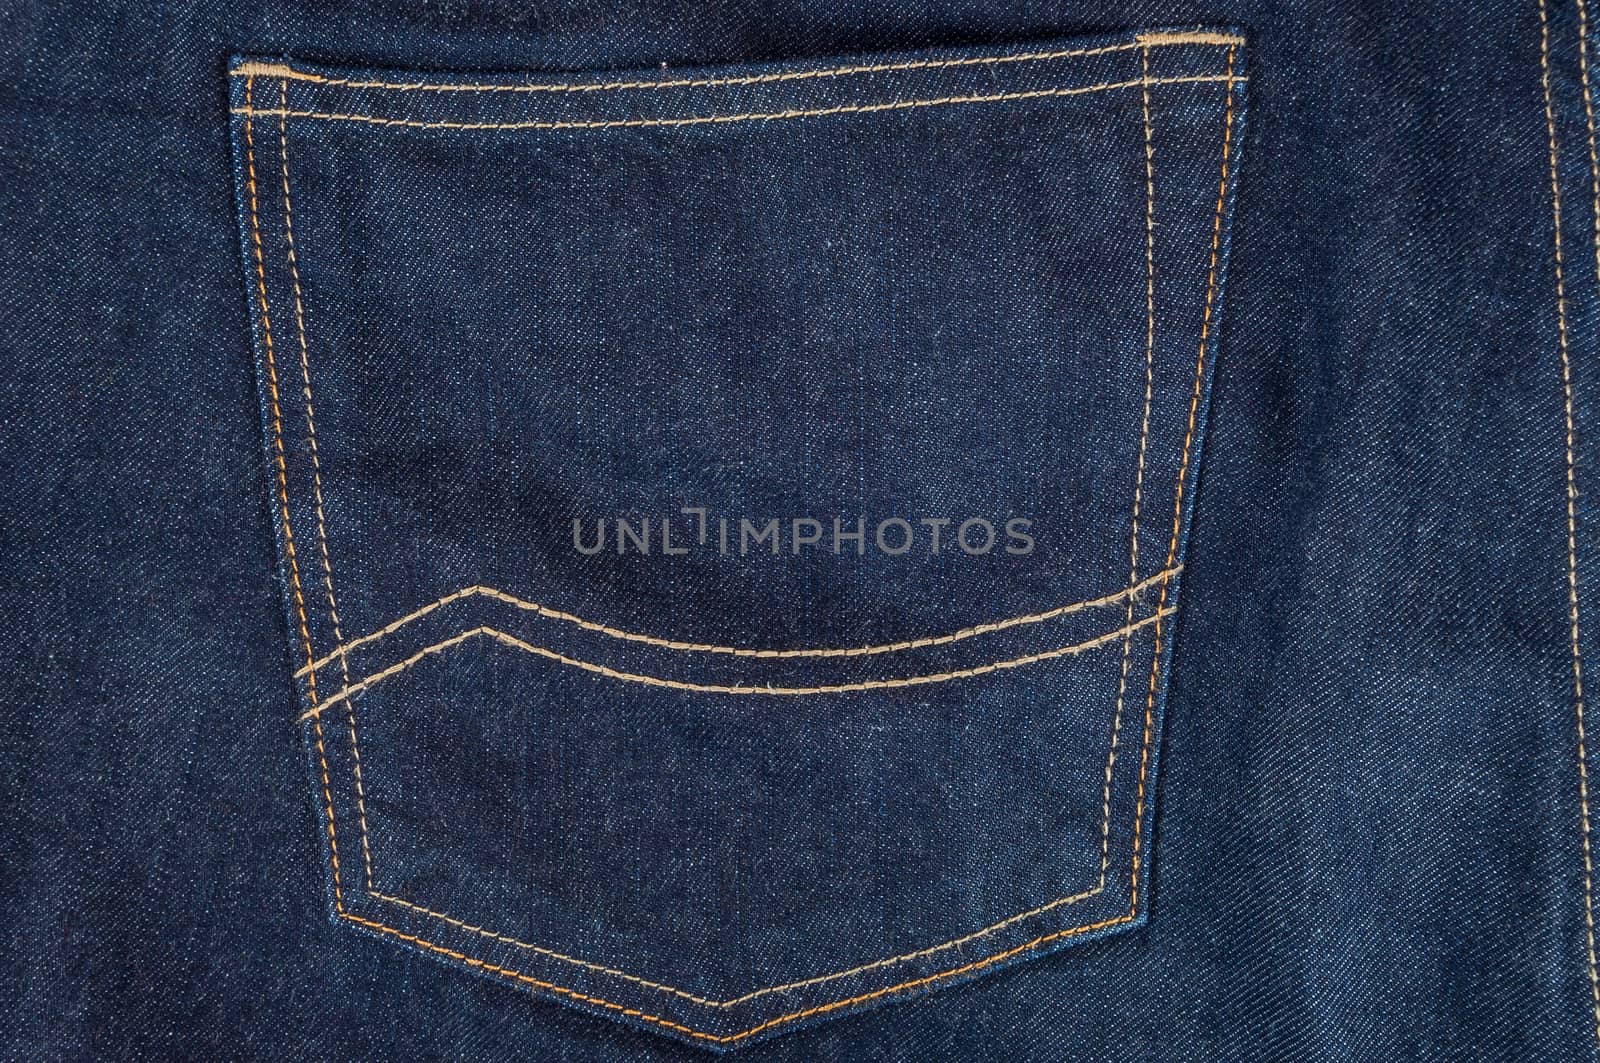 Empty pocket in dark blue jeans trousers